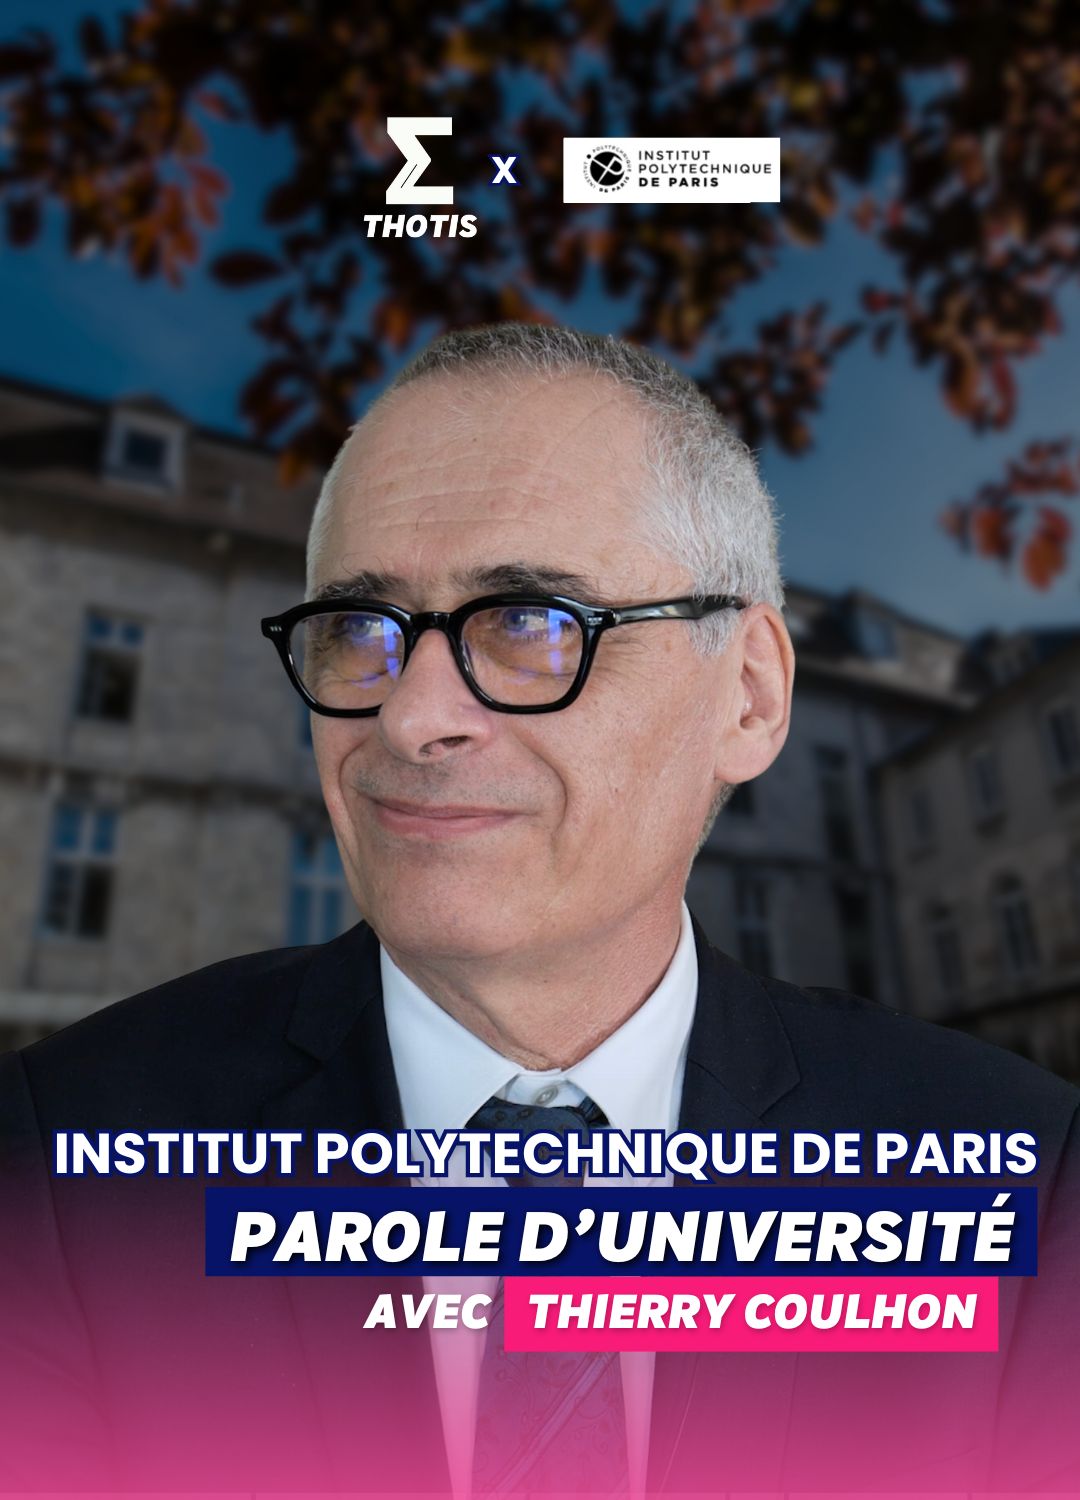 Parole d'université avec Thierry Coulhon de l'institut Polytechique de paris